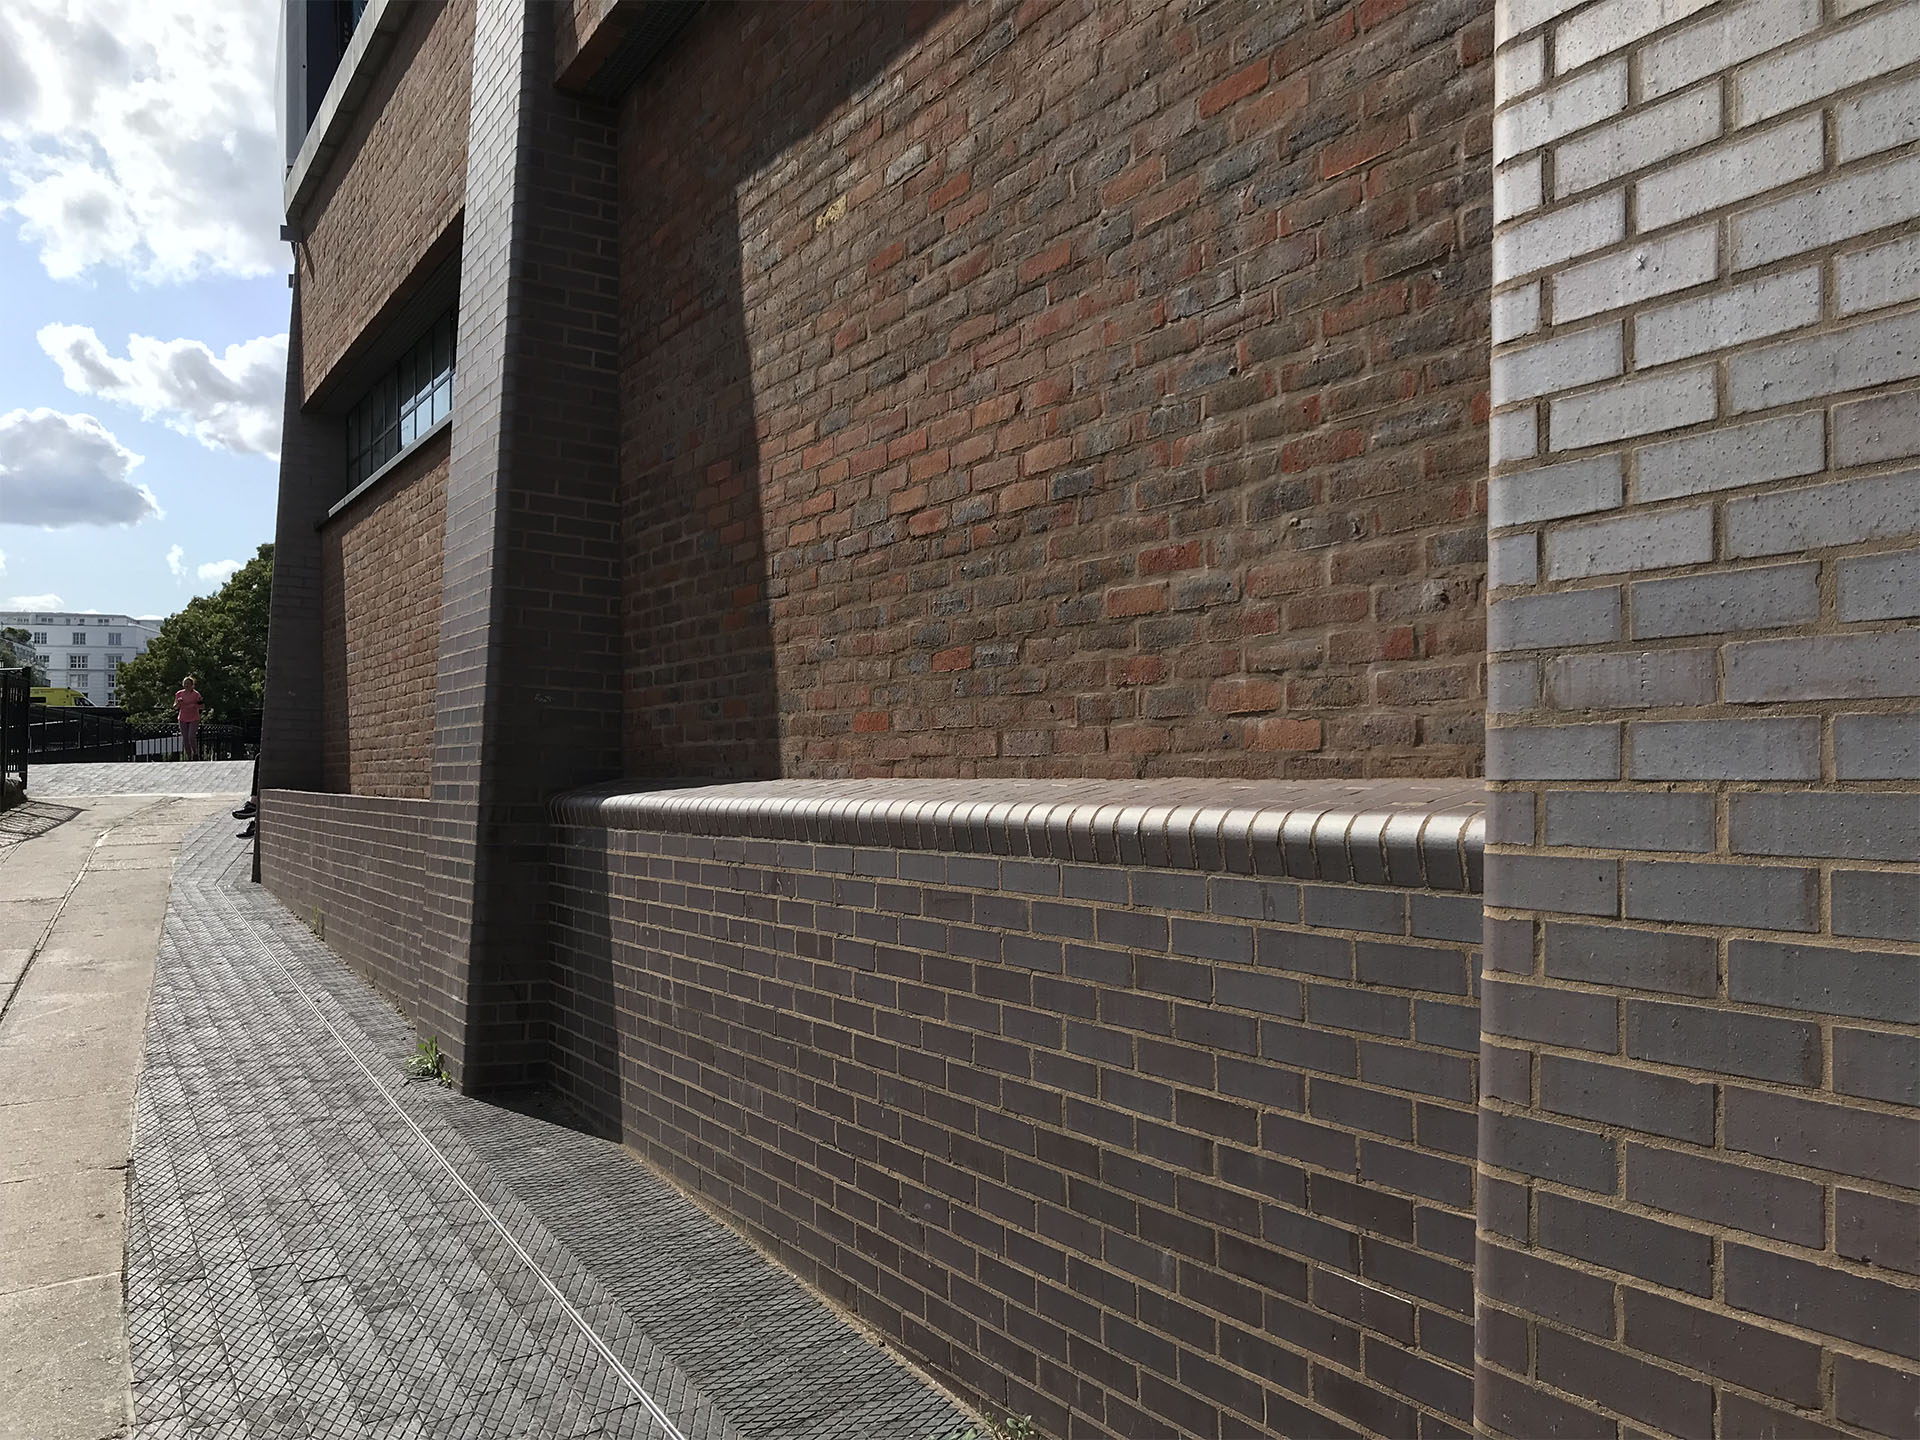 Brown brindle facing bricks and bullnose bricks create seating along the wall at Hawley Wharf